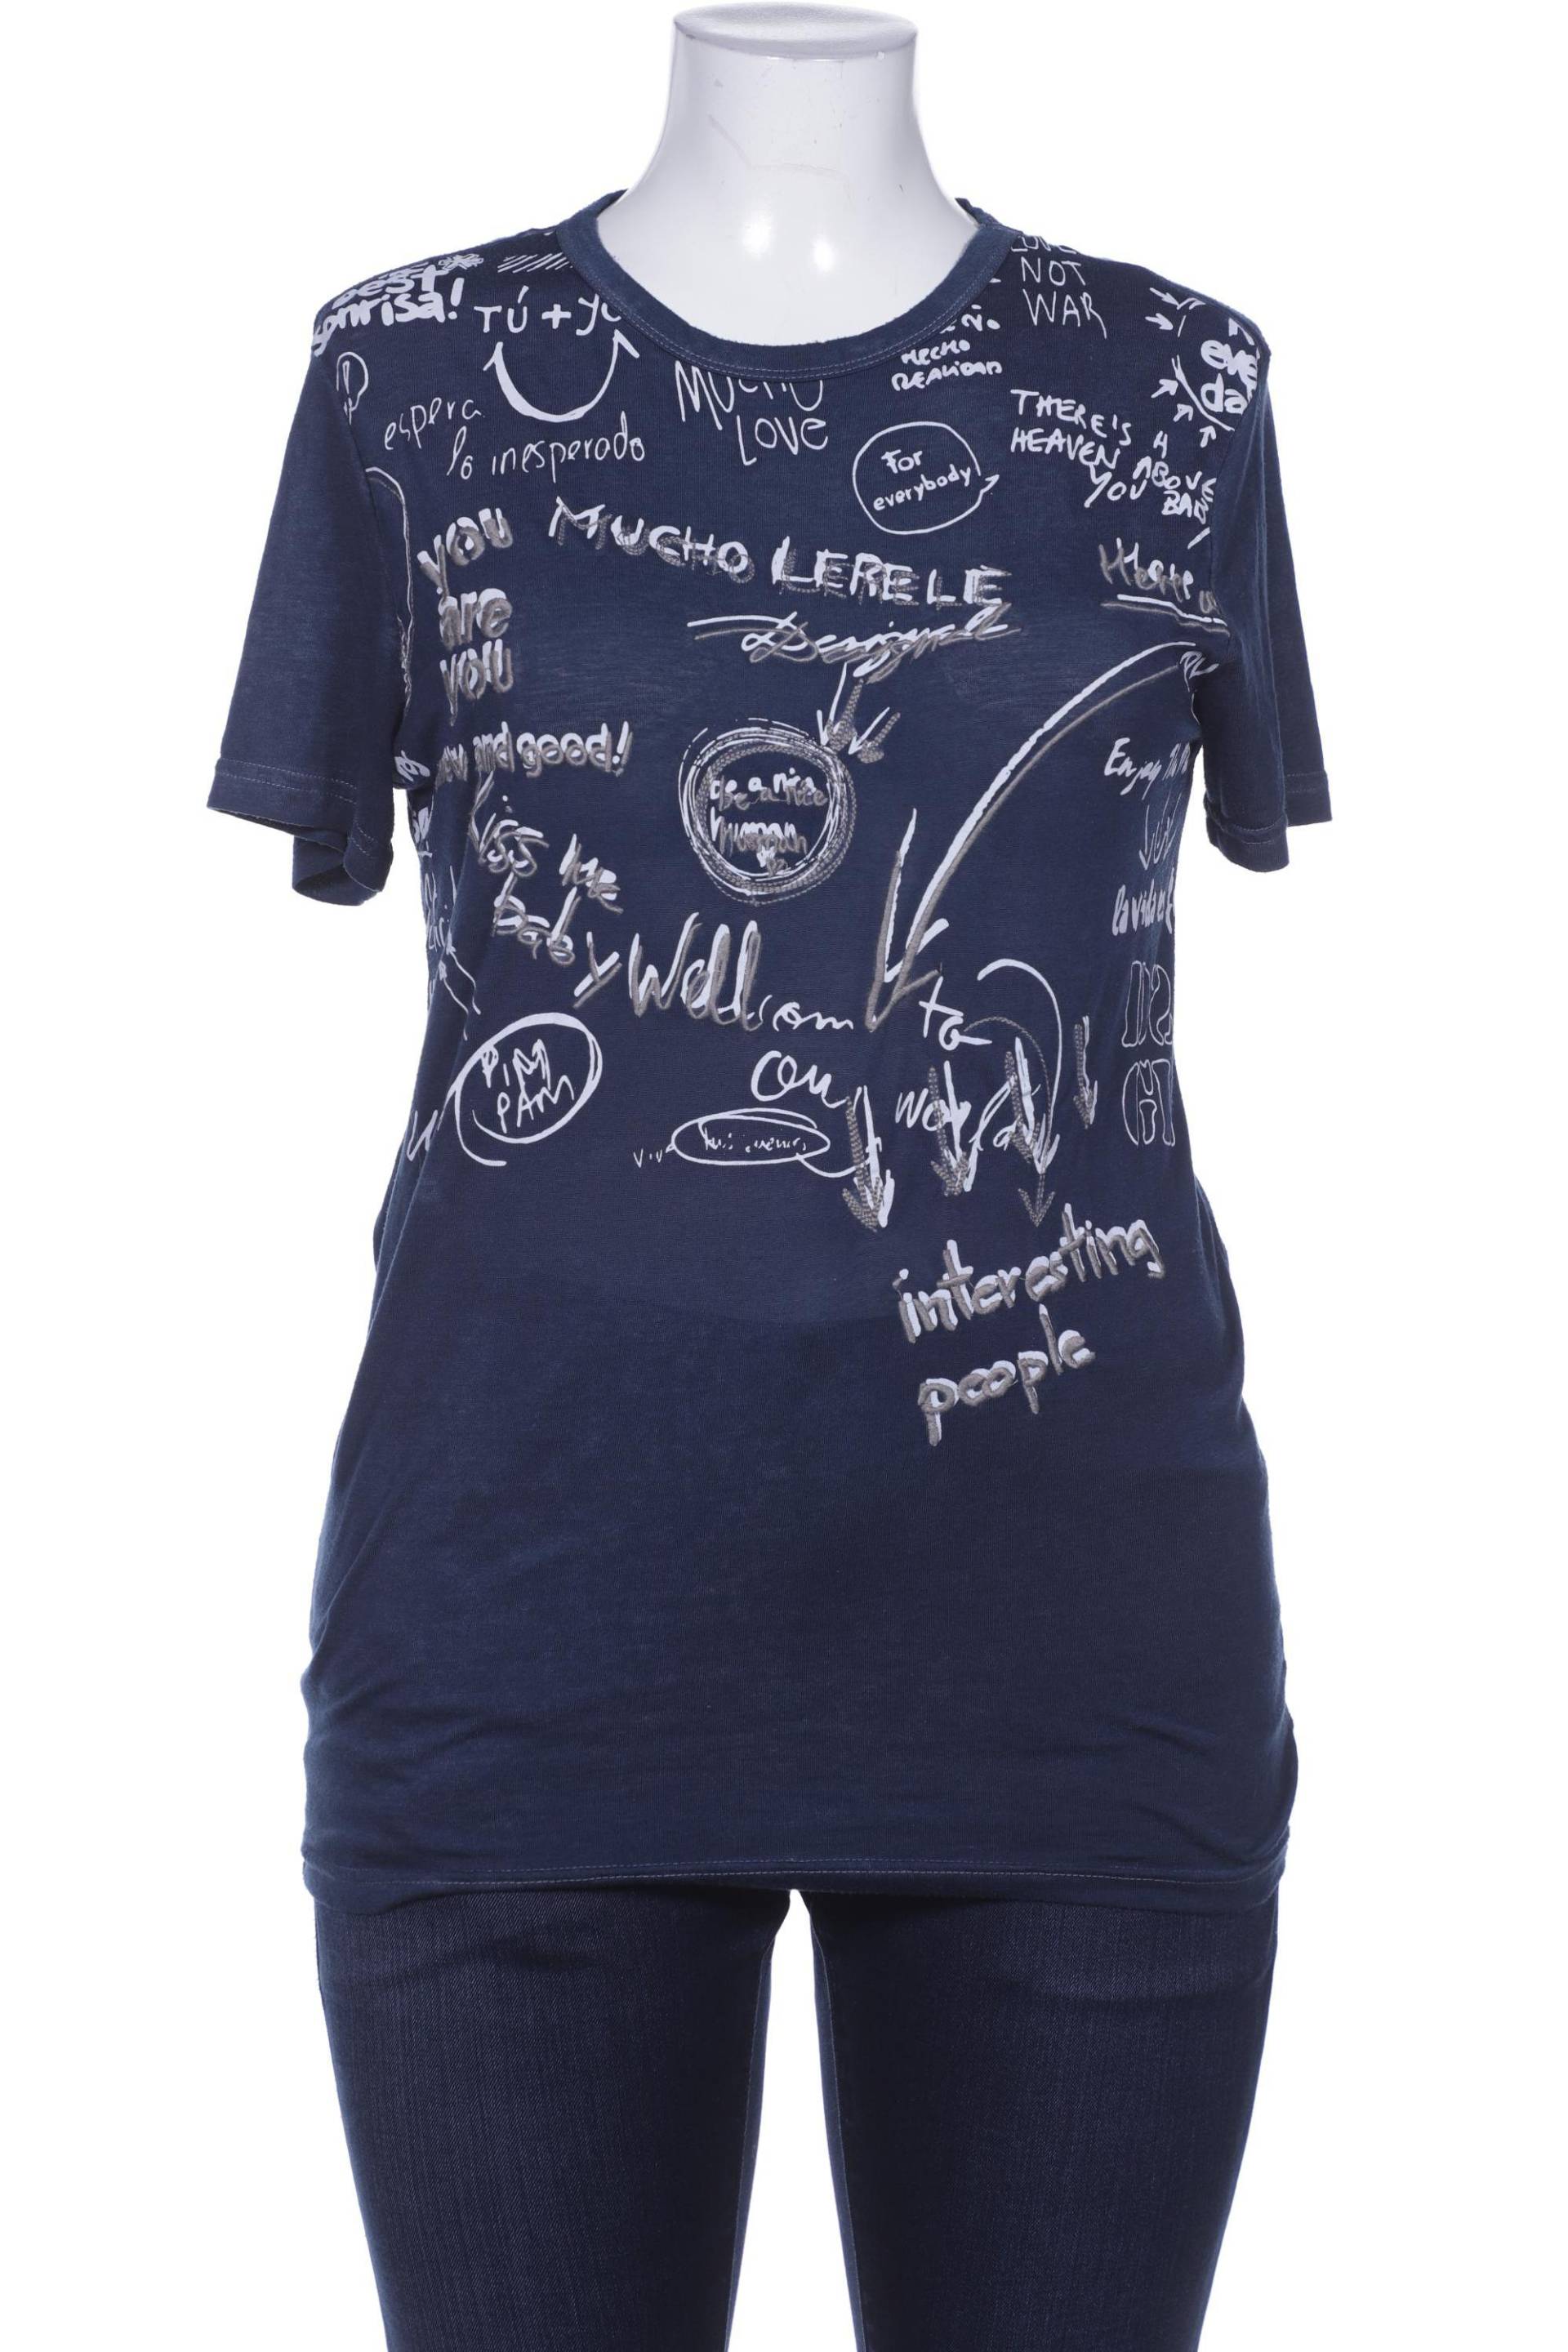 Desigual Herren T-Shirt, marineblau von Desigual